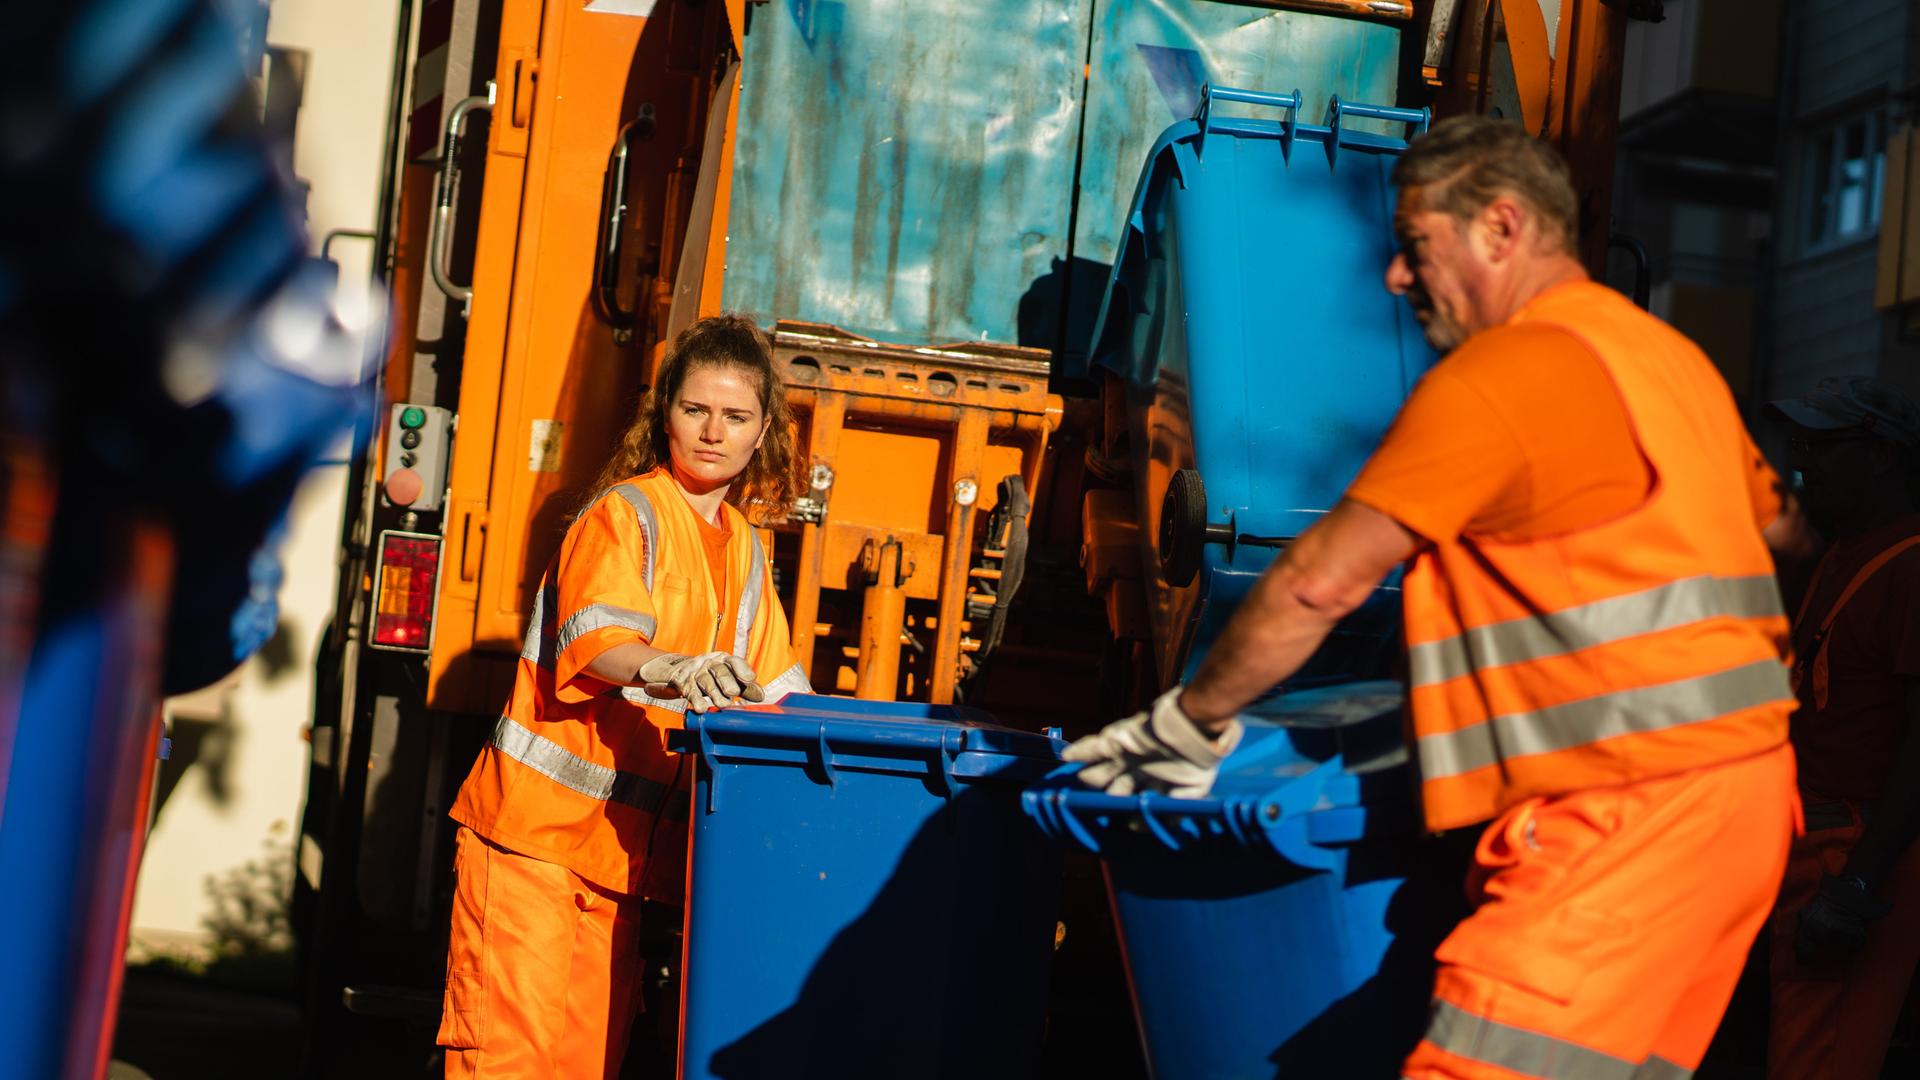 Zwei Müllwerker bei der Arbeit: Eine junge Frau und ein mittelalter Mann schieben Papiermülltonnen zum Laster der Müllabfuhr